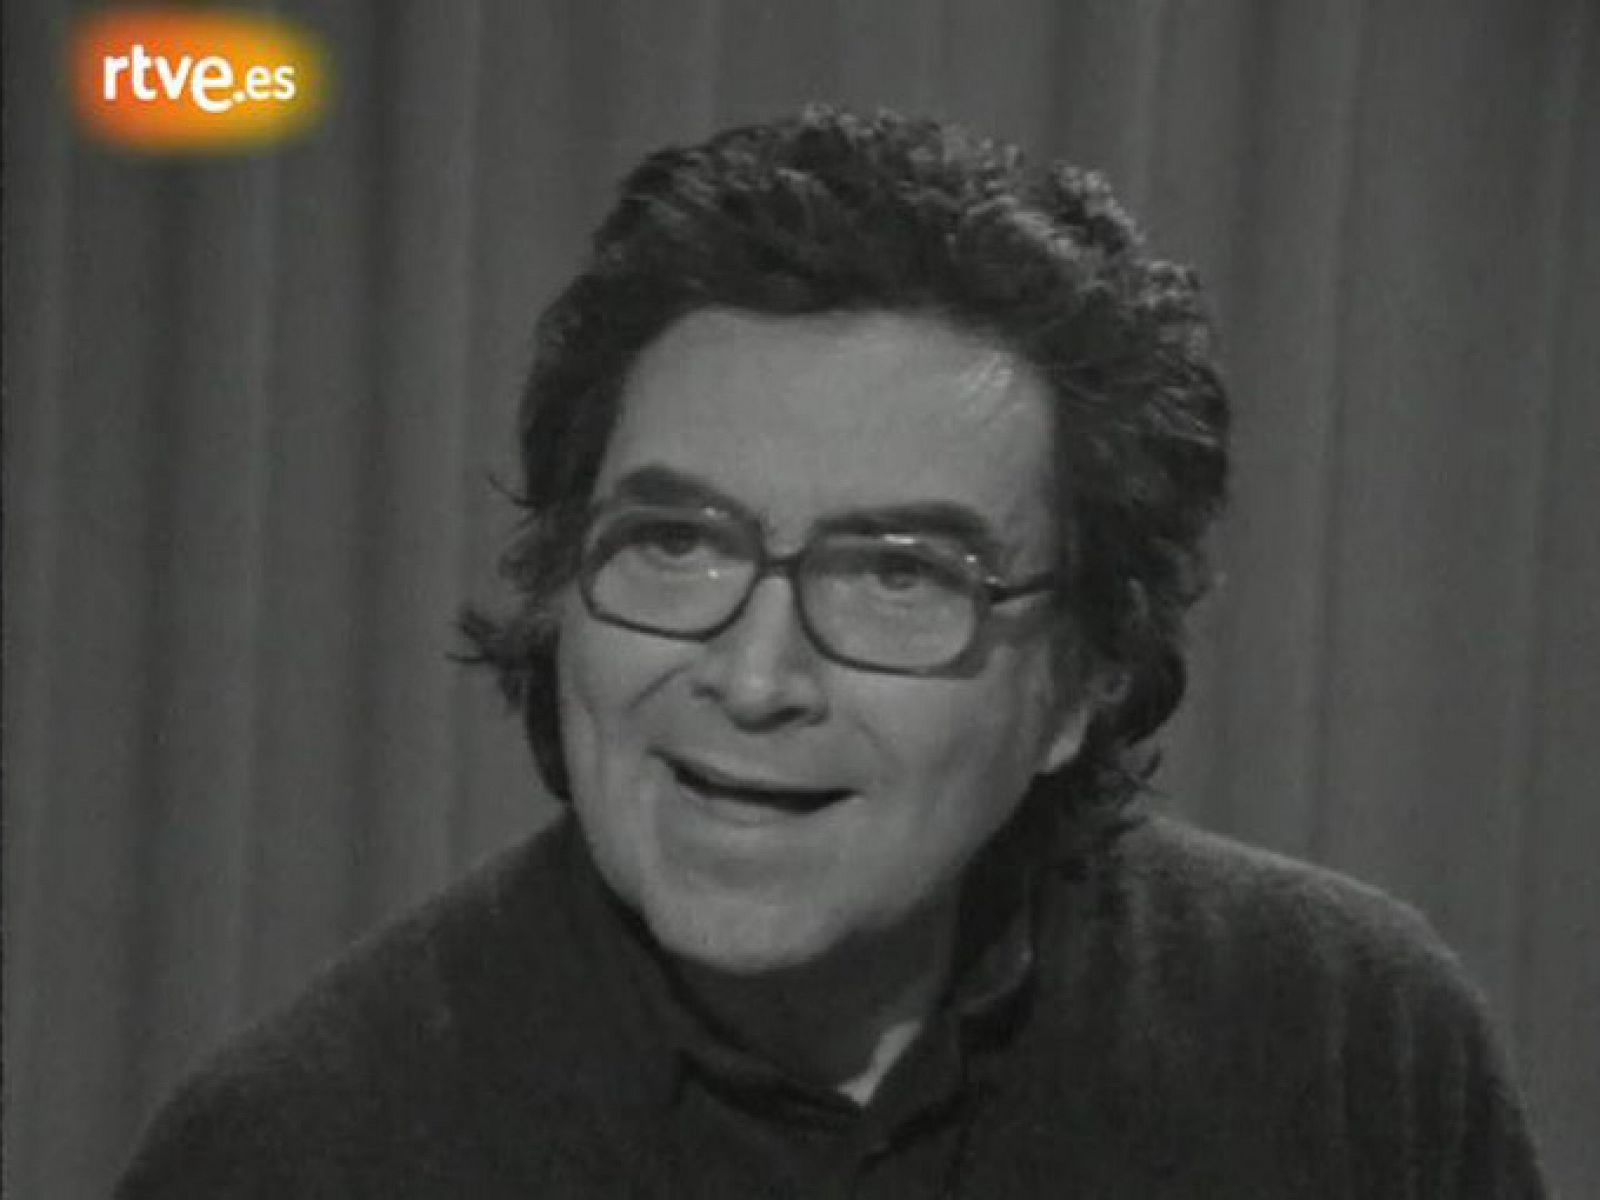 Arxiu TVE Catalunya - Personatges - Antoni Tàpies